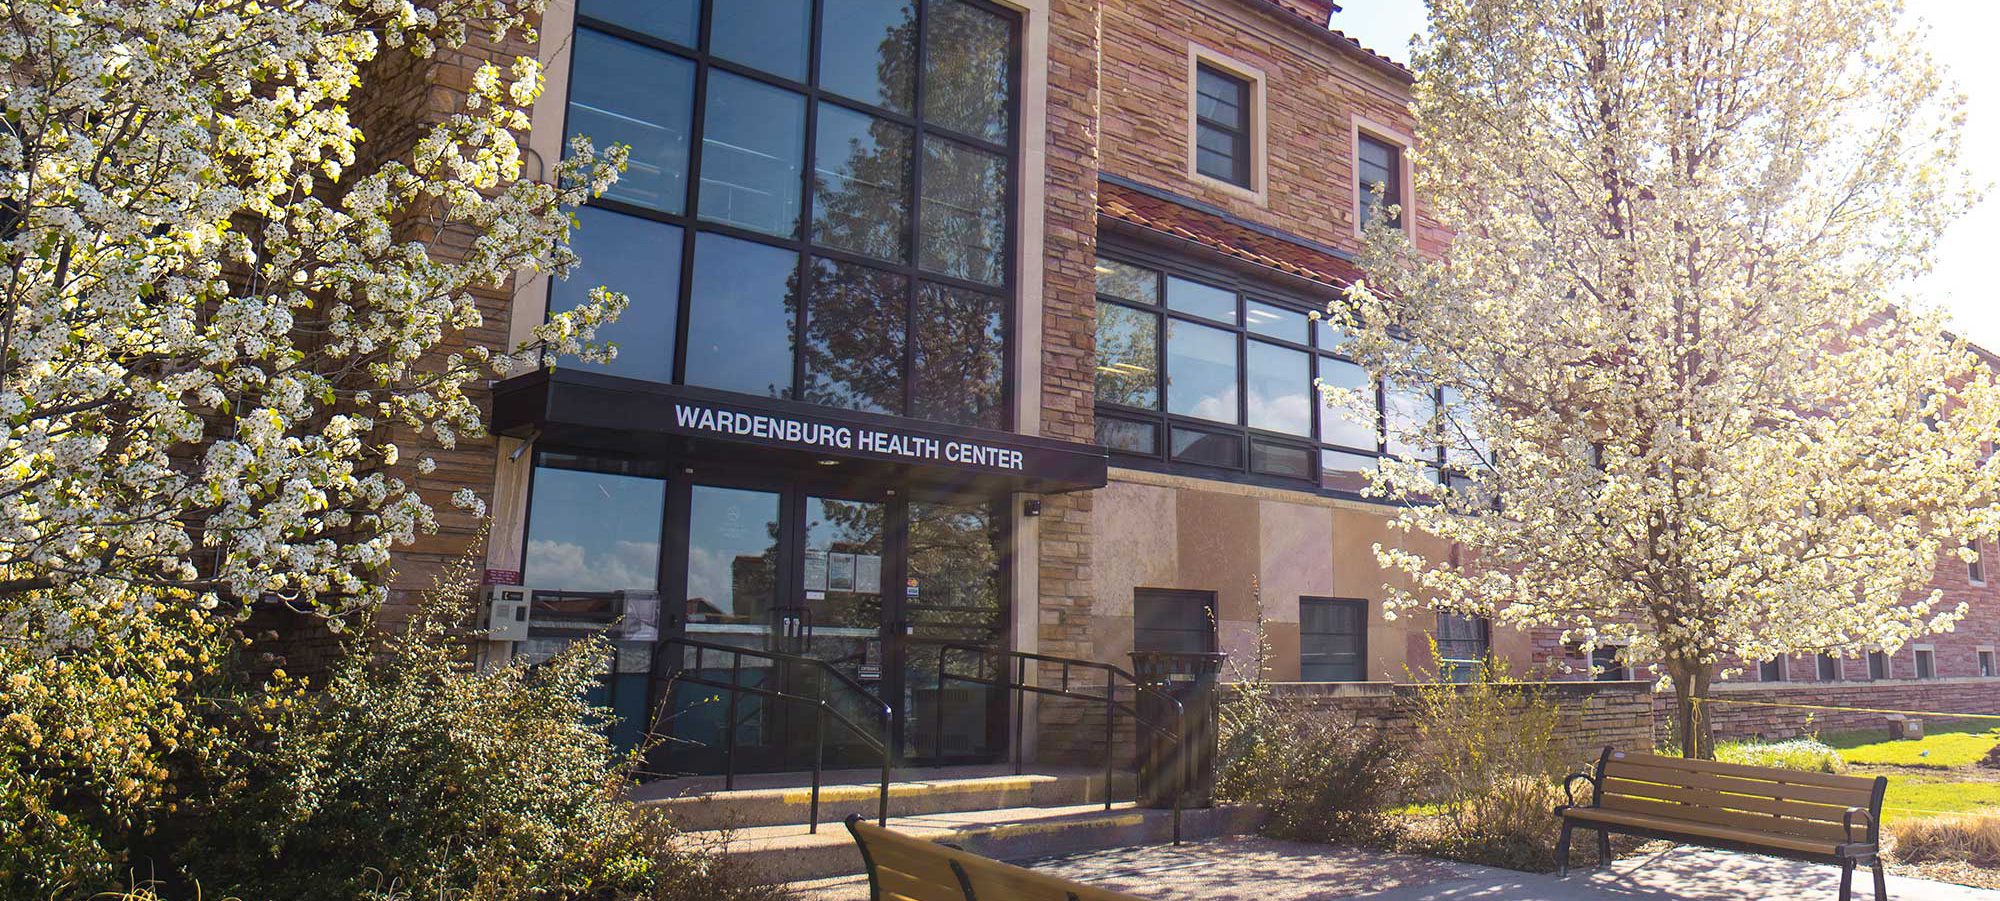 Wardenburg Health Center